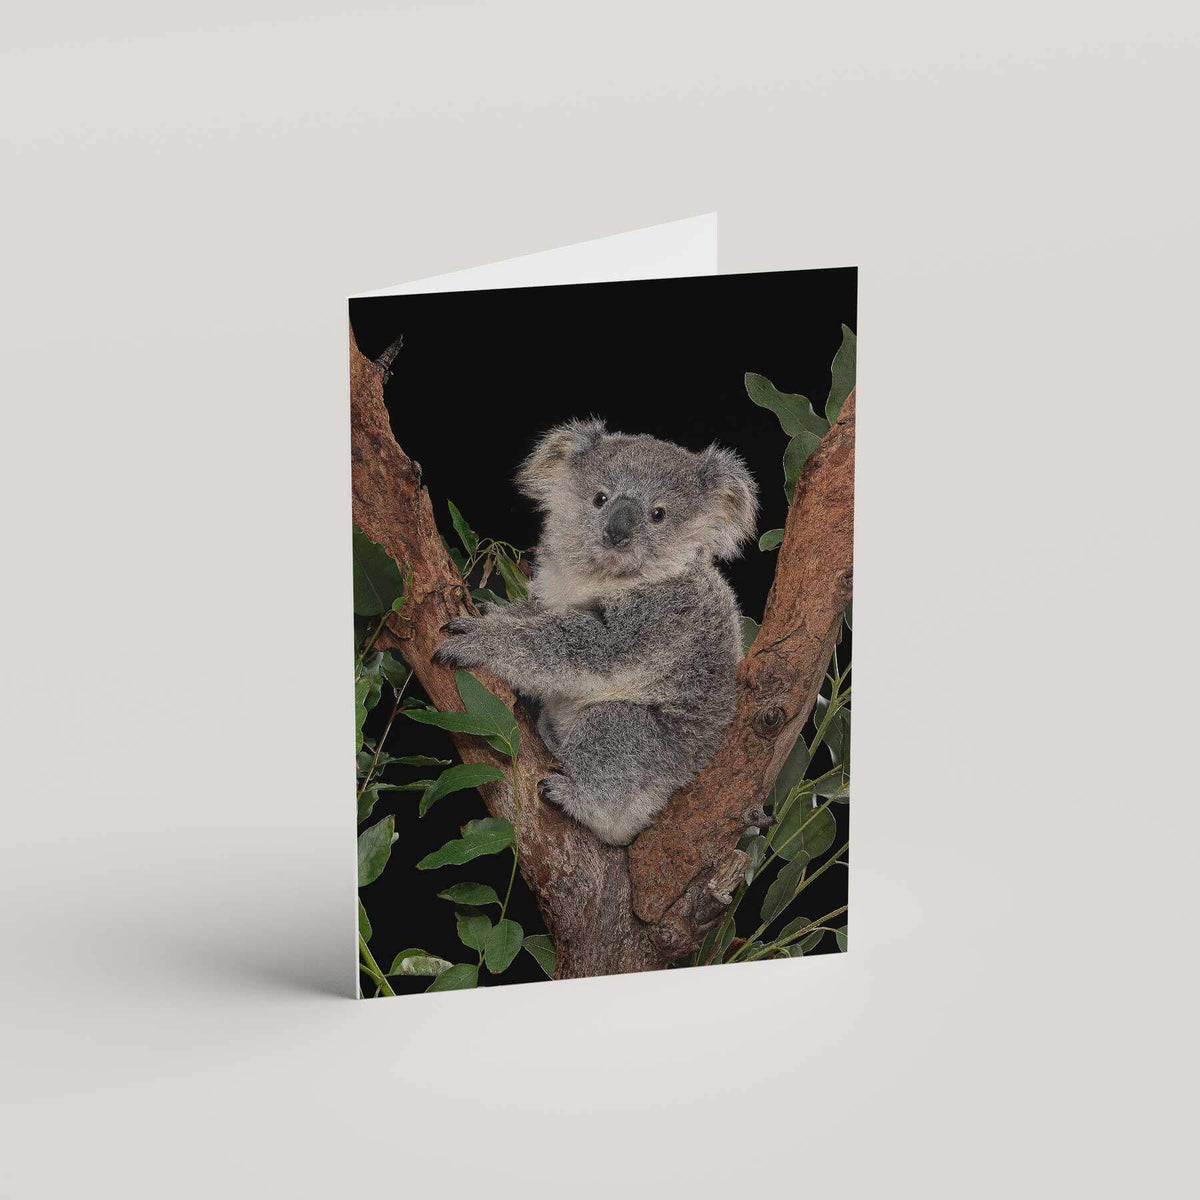 Harry the Koala